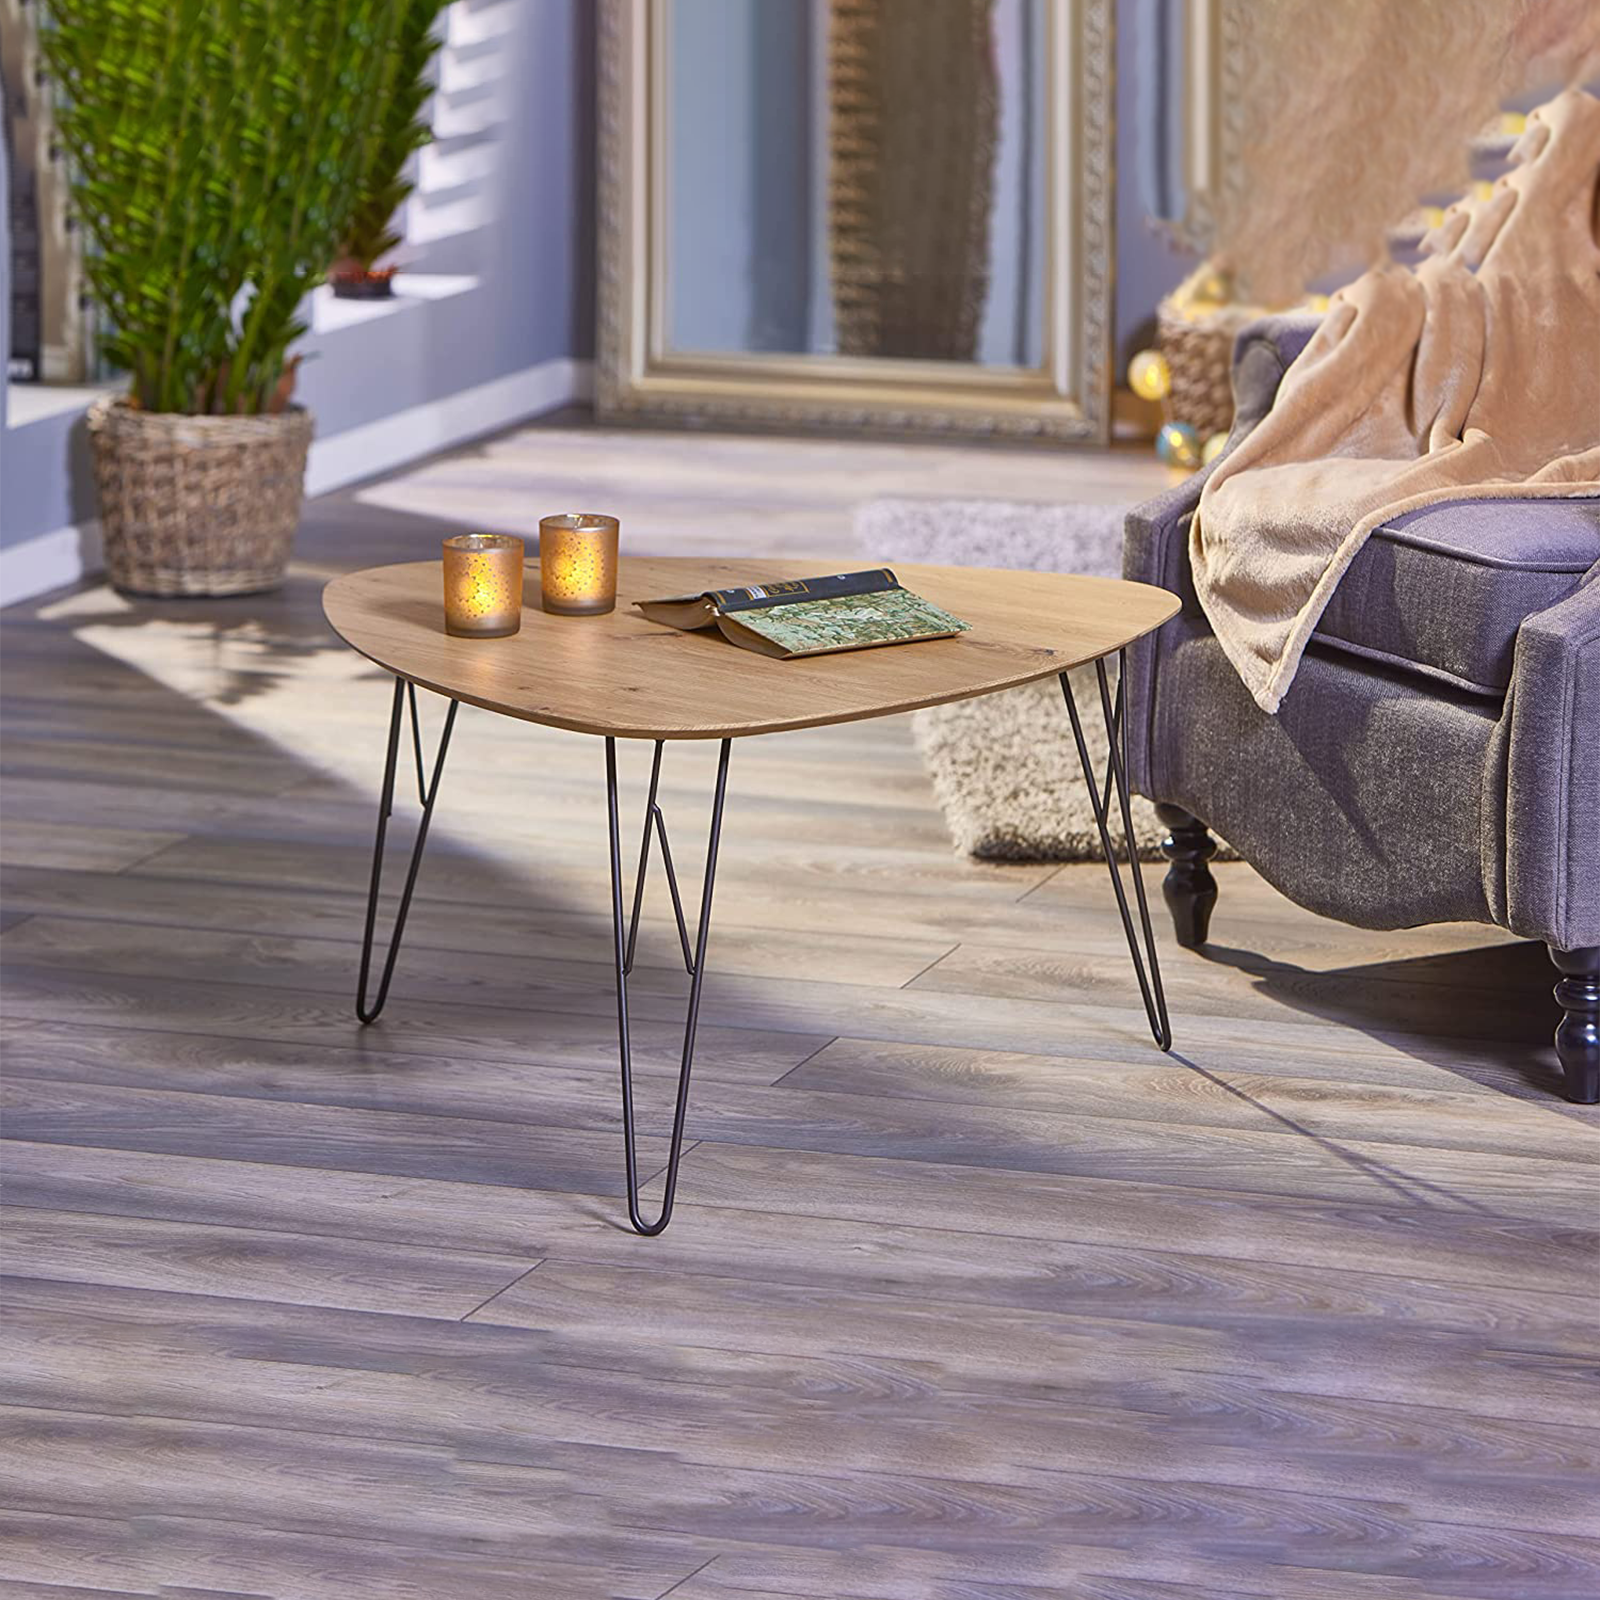 Tavolino basso da caffè Tampa per soggiorno in metallo e legno quercia cm 80x78 41h